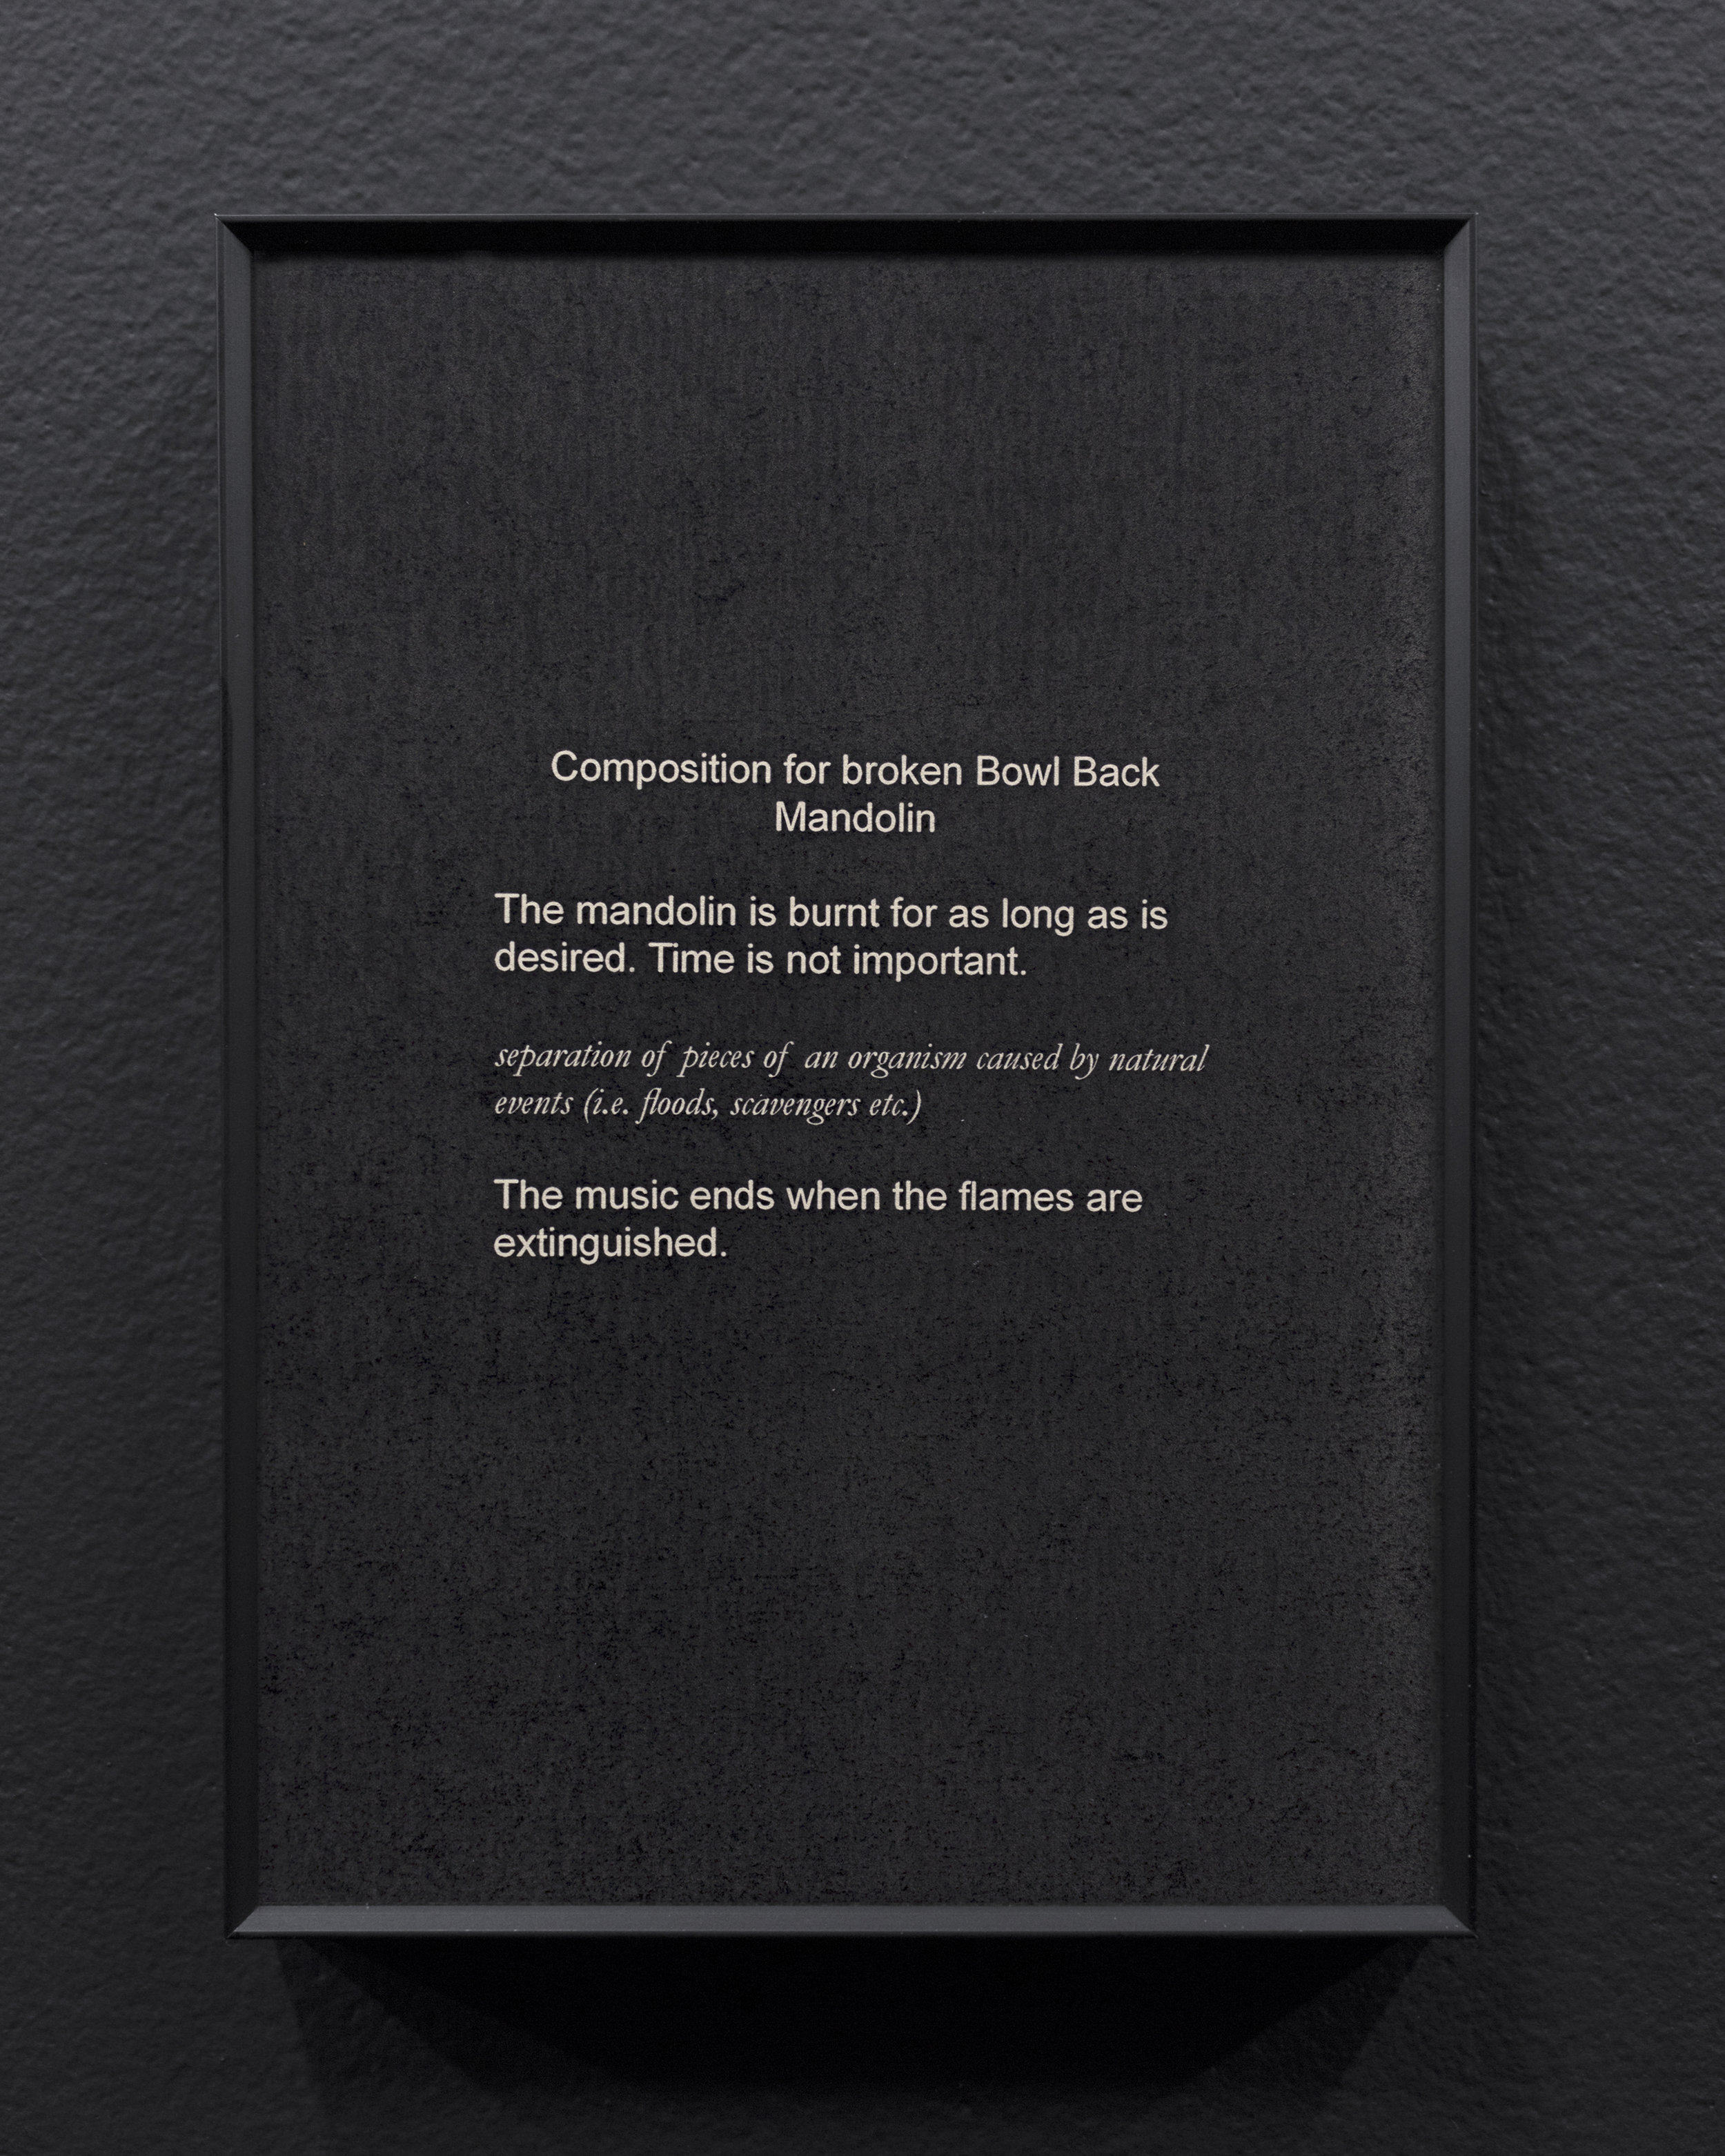  Micca Schippa,  Composition for broken Bowl Back Mandolin,  Inkjet print on photo rag. 2018 